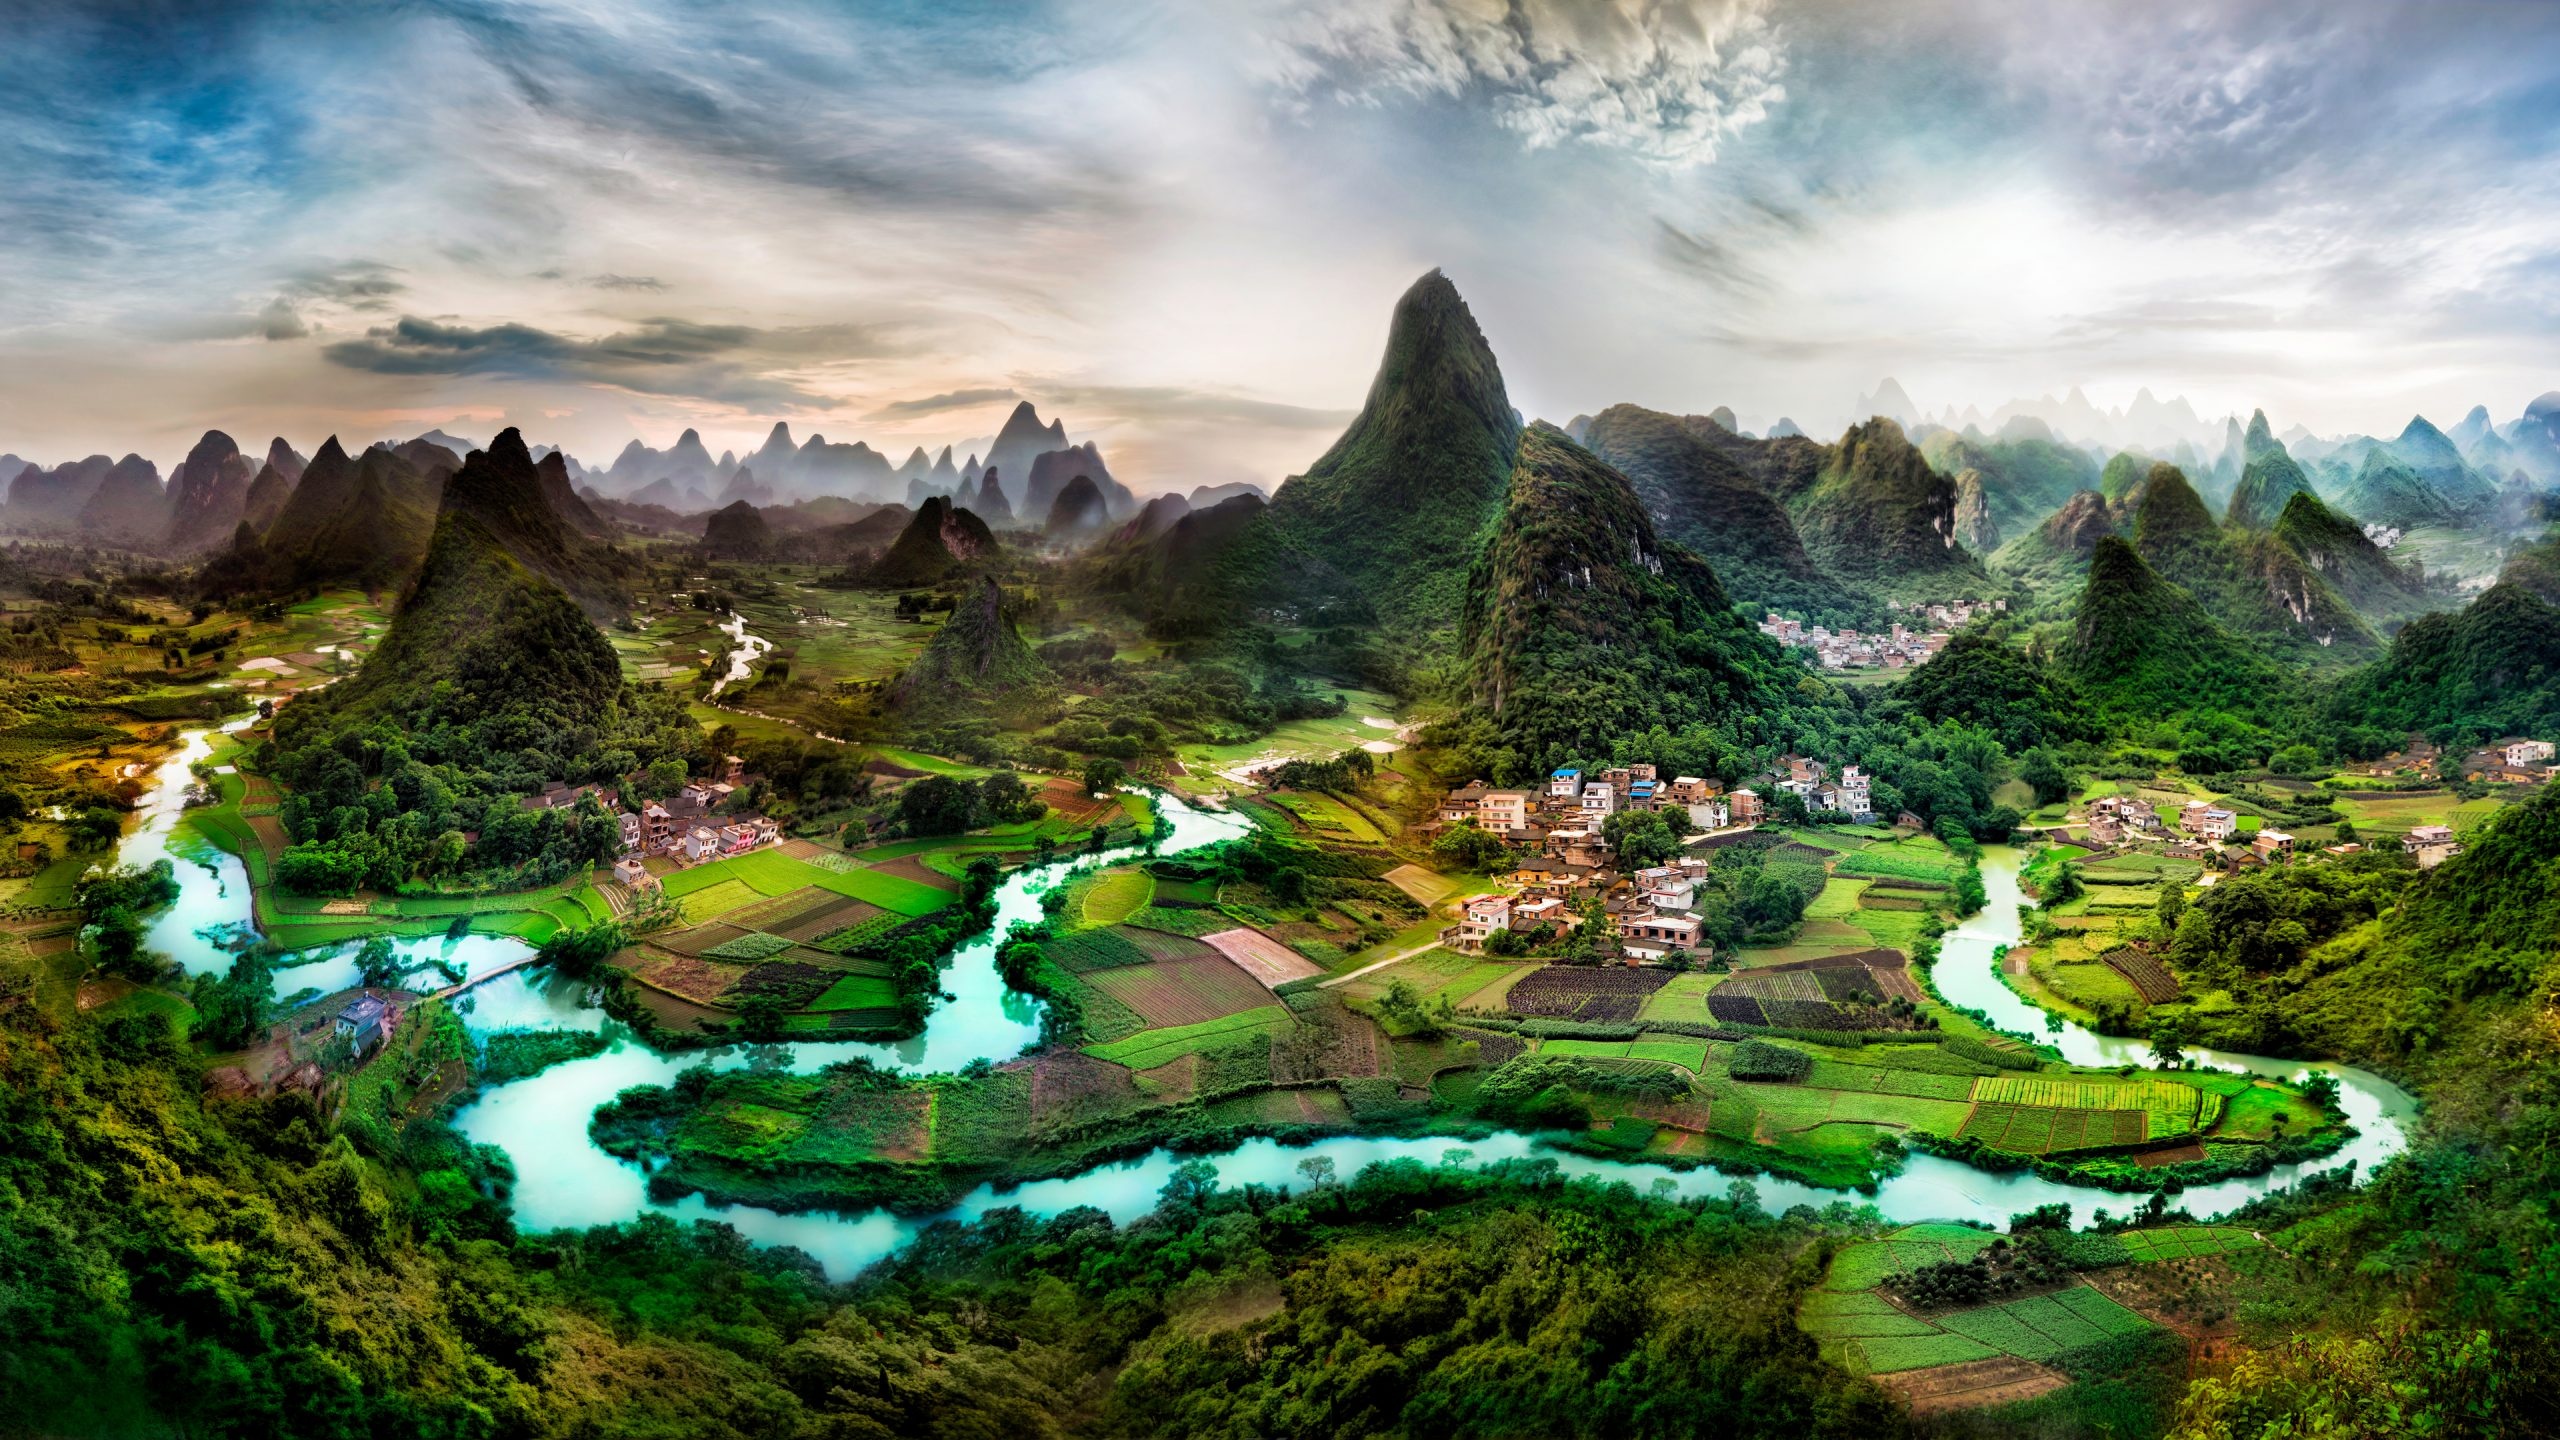 Li River, Guilin, Scenic beauty, HD wallpaper, 2560x1440 HD Desktop